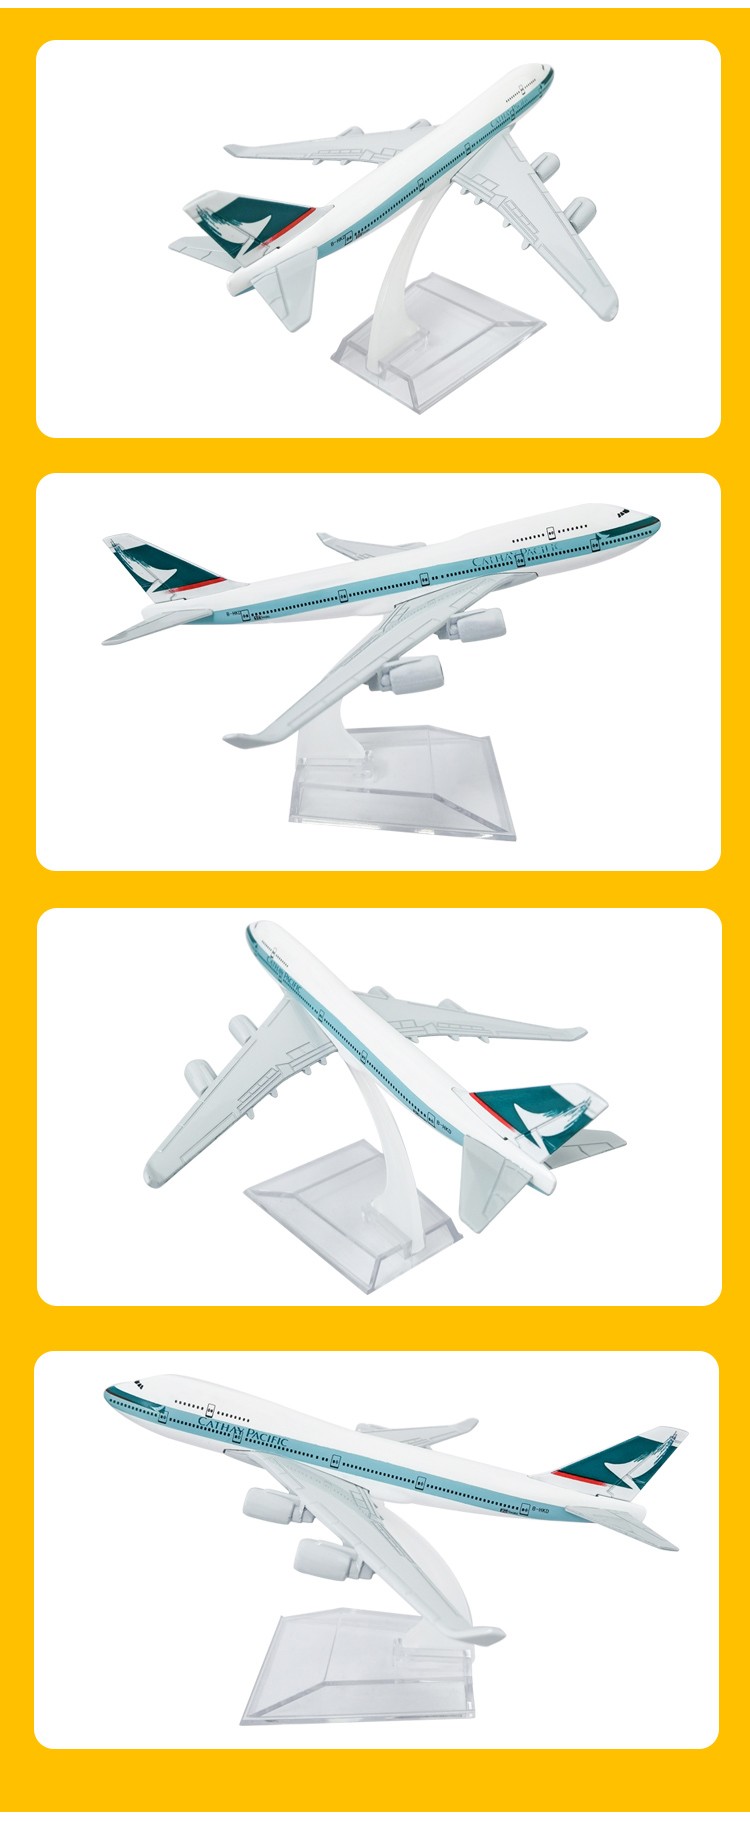 厂家直销锌合金工艺品摆件儿童玩具金属飞机模型国泰航空仿真模型16cm详情图5